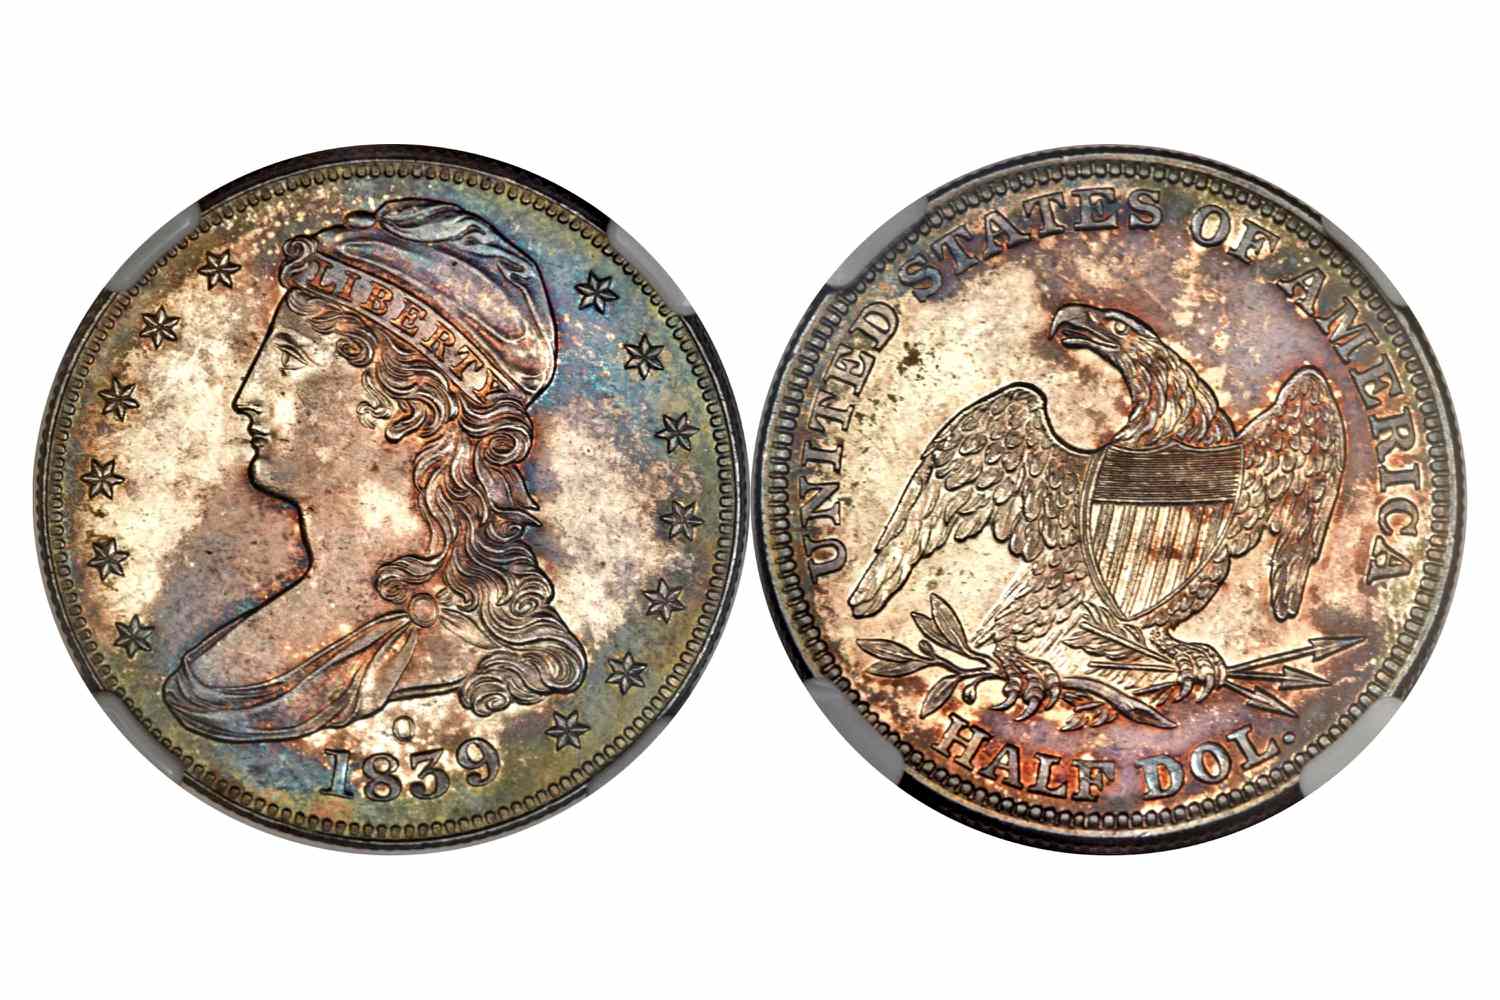 1839-O证明盖半身像半美元